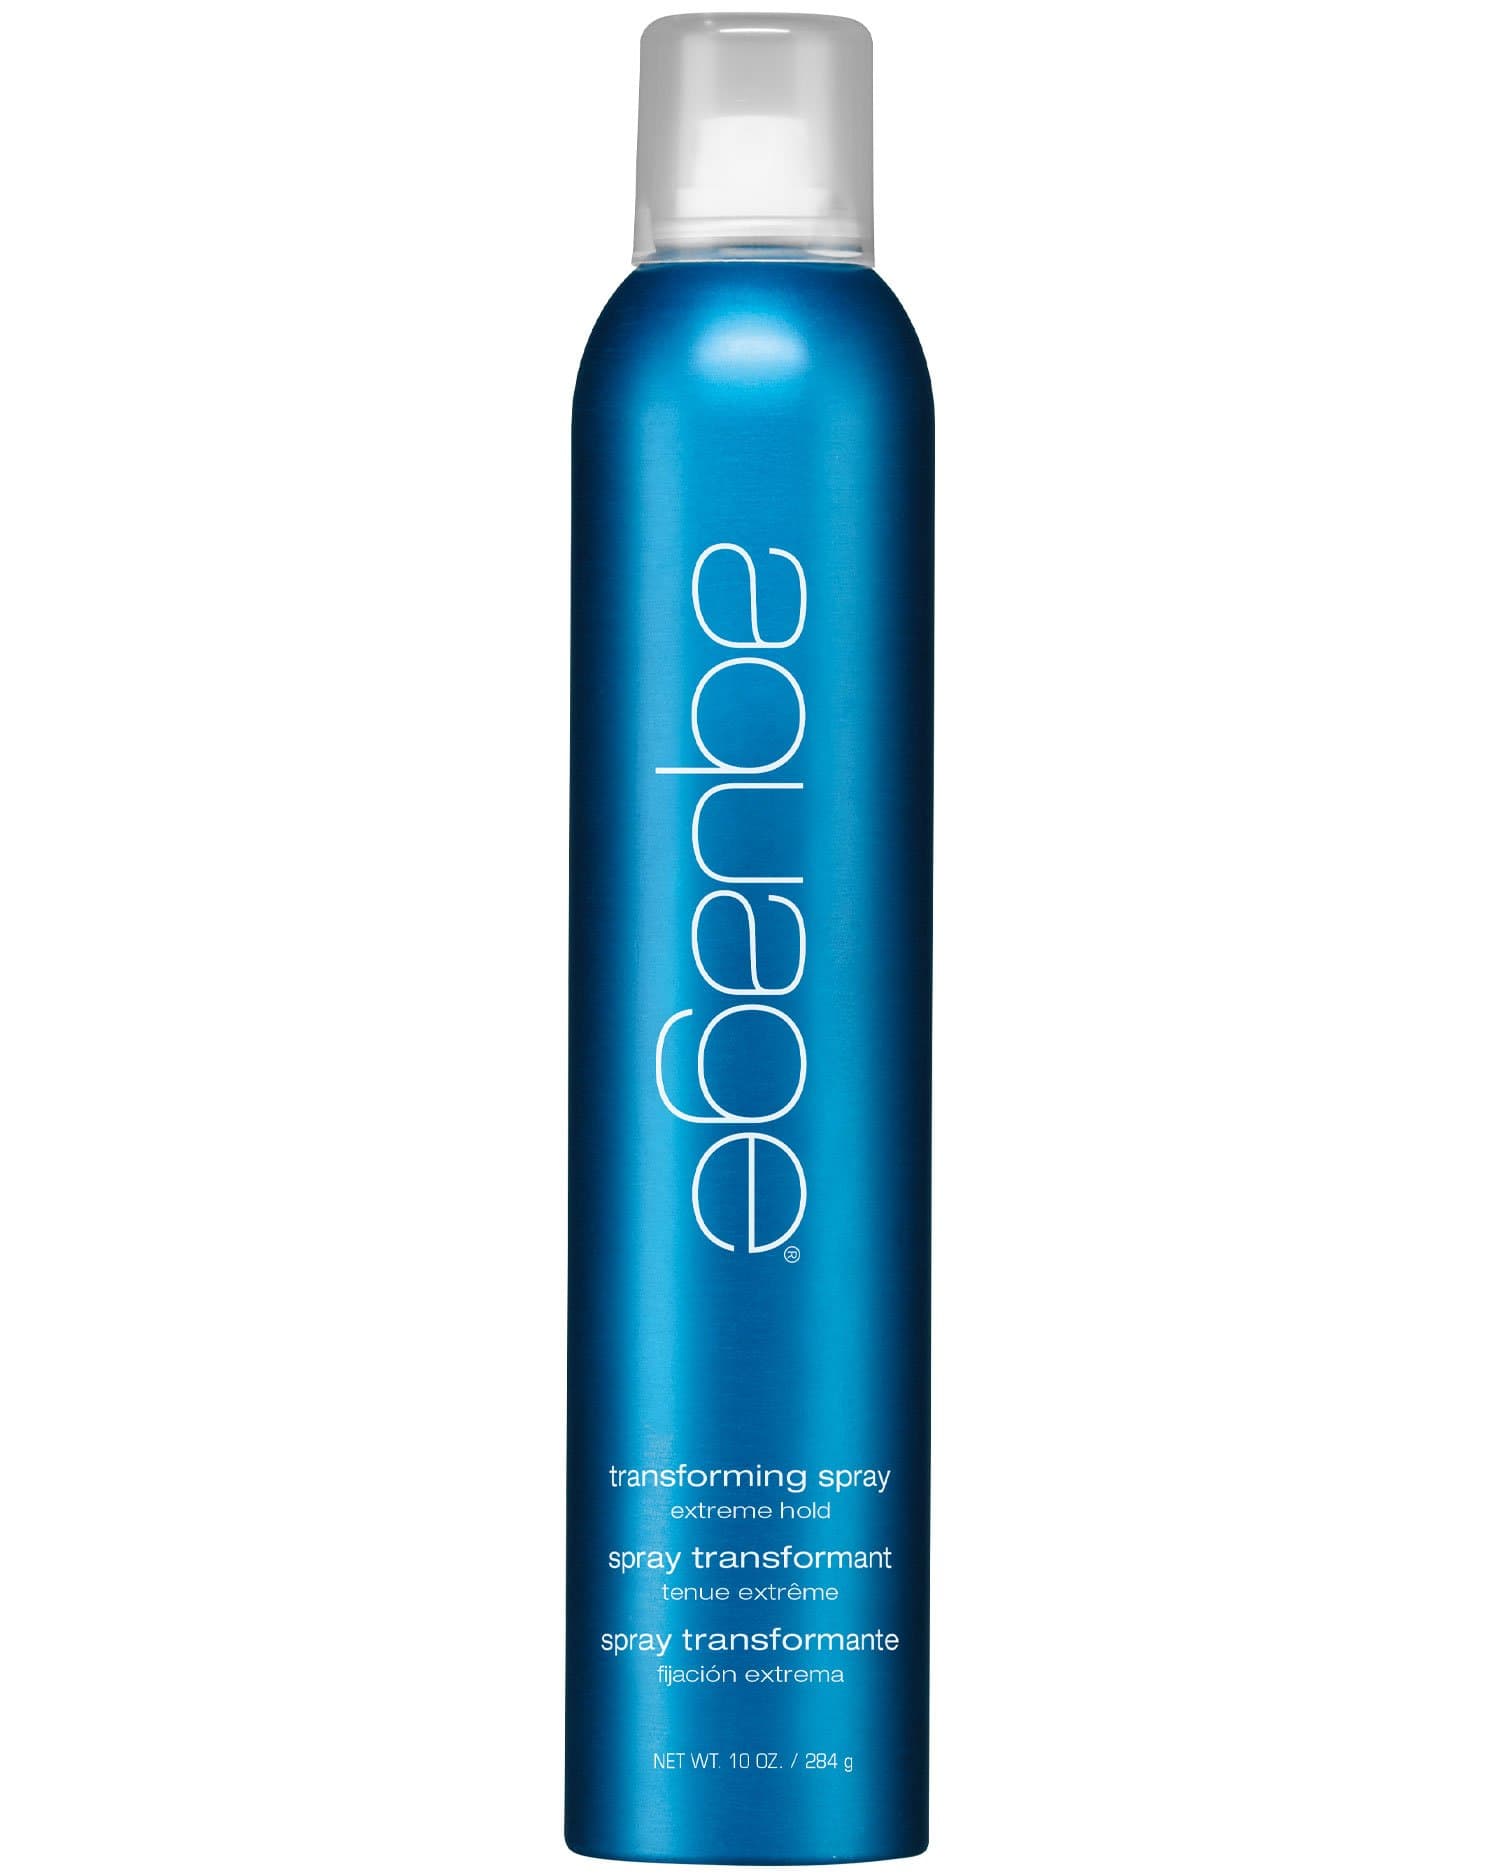 Thickening Spray Gel – Aquage Hair